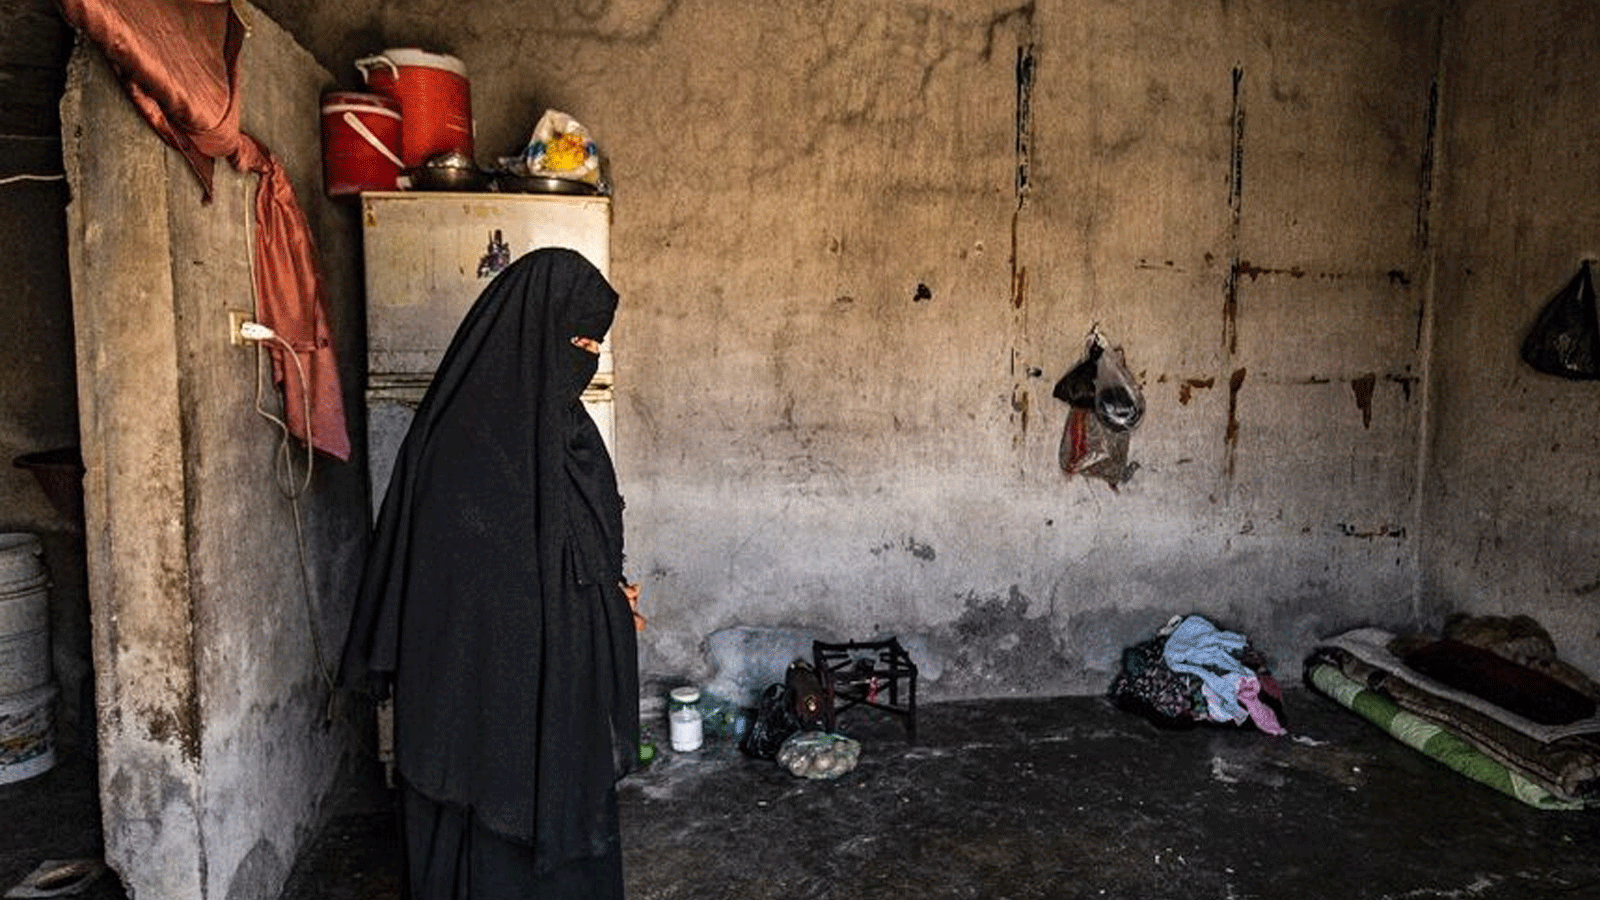 نورا الخليف عادت إلى مسقط رأسها خارج الرقة منذ ثلاث سنوات، لكنها تكافح للتخلص من وصمة العار المتمثلة في العيش في مخيم الهول، حيث يُحتجز أقارب مقاتلين يشتبه في أنهم من تنظيم الدولة الإسلامية.